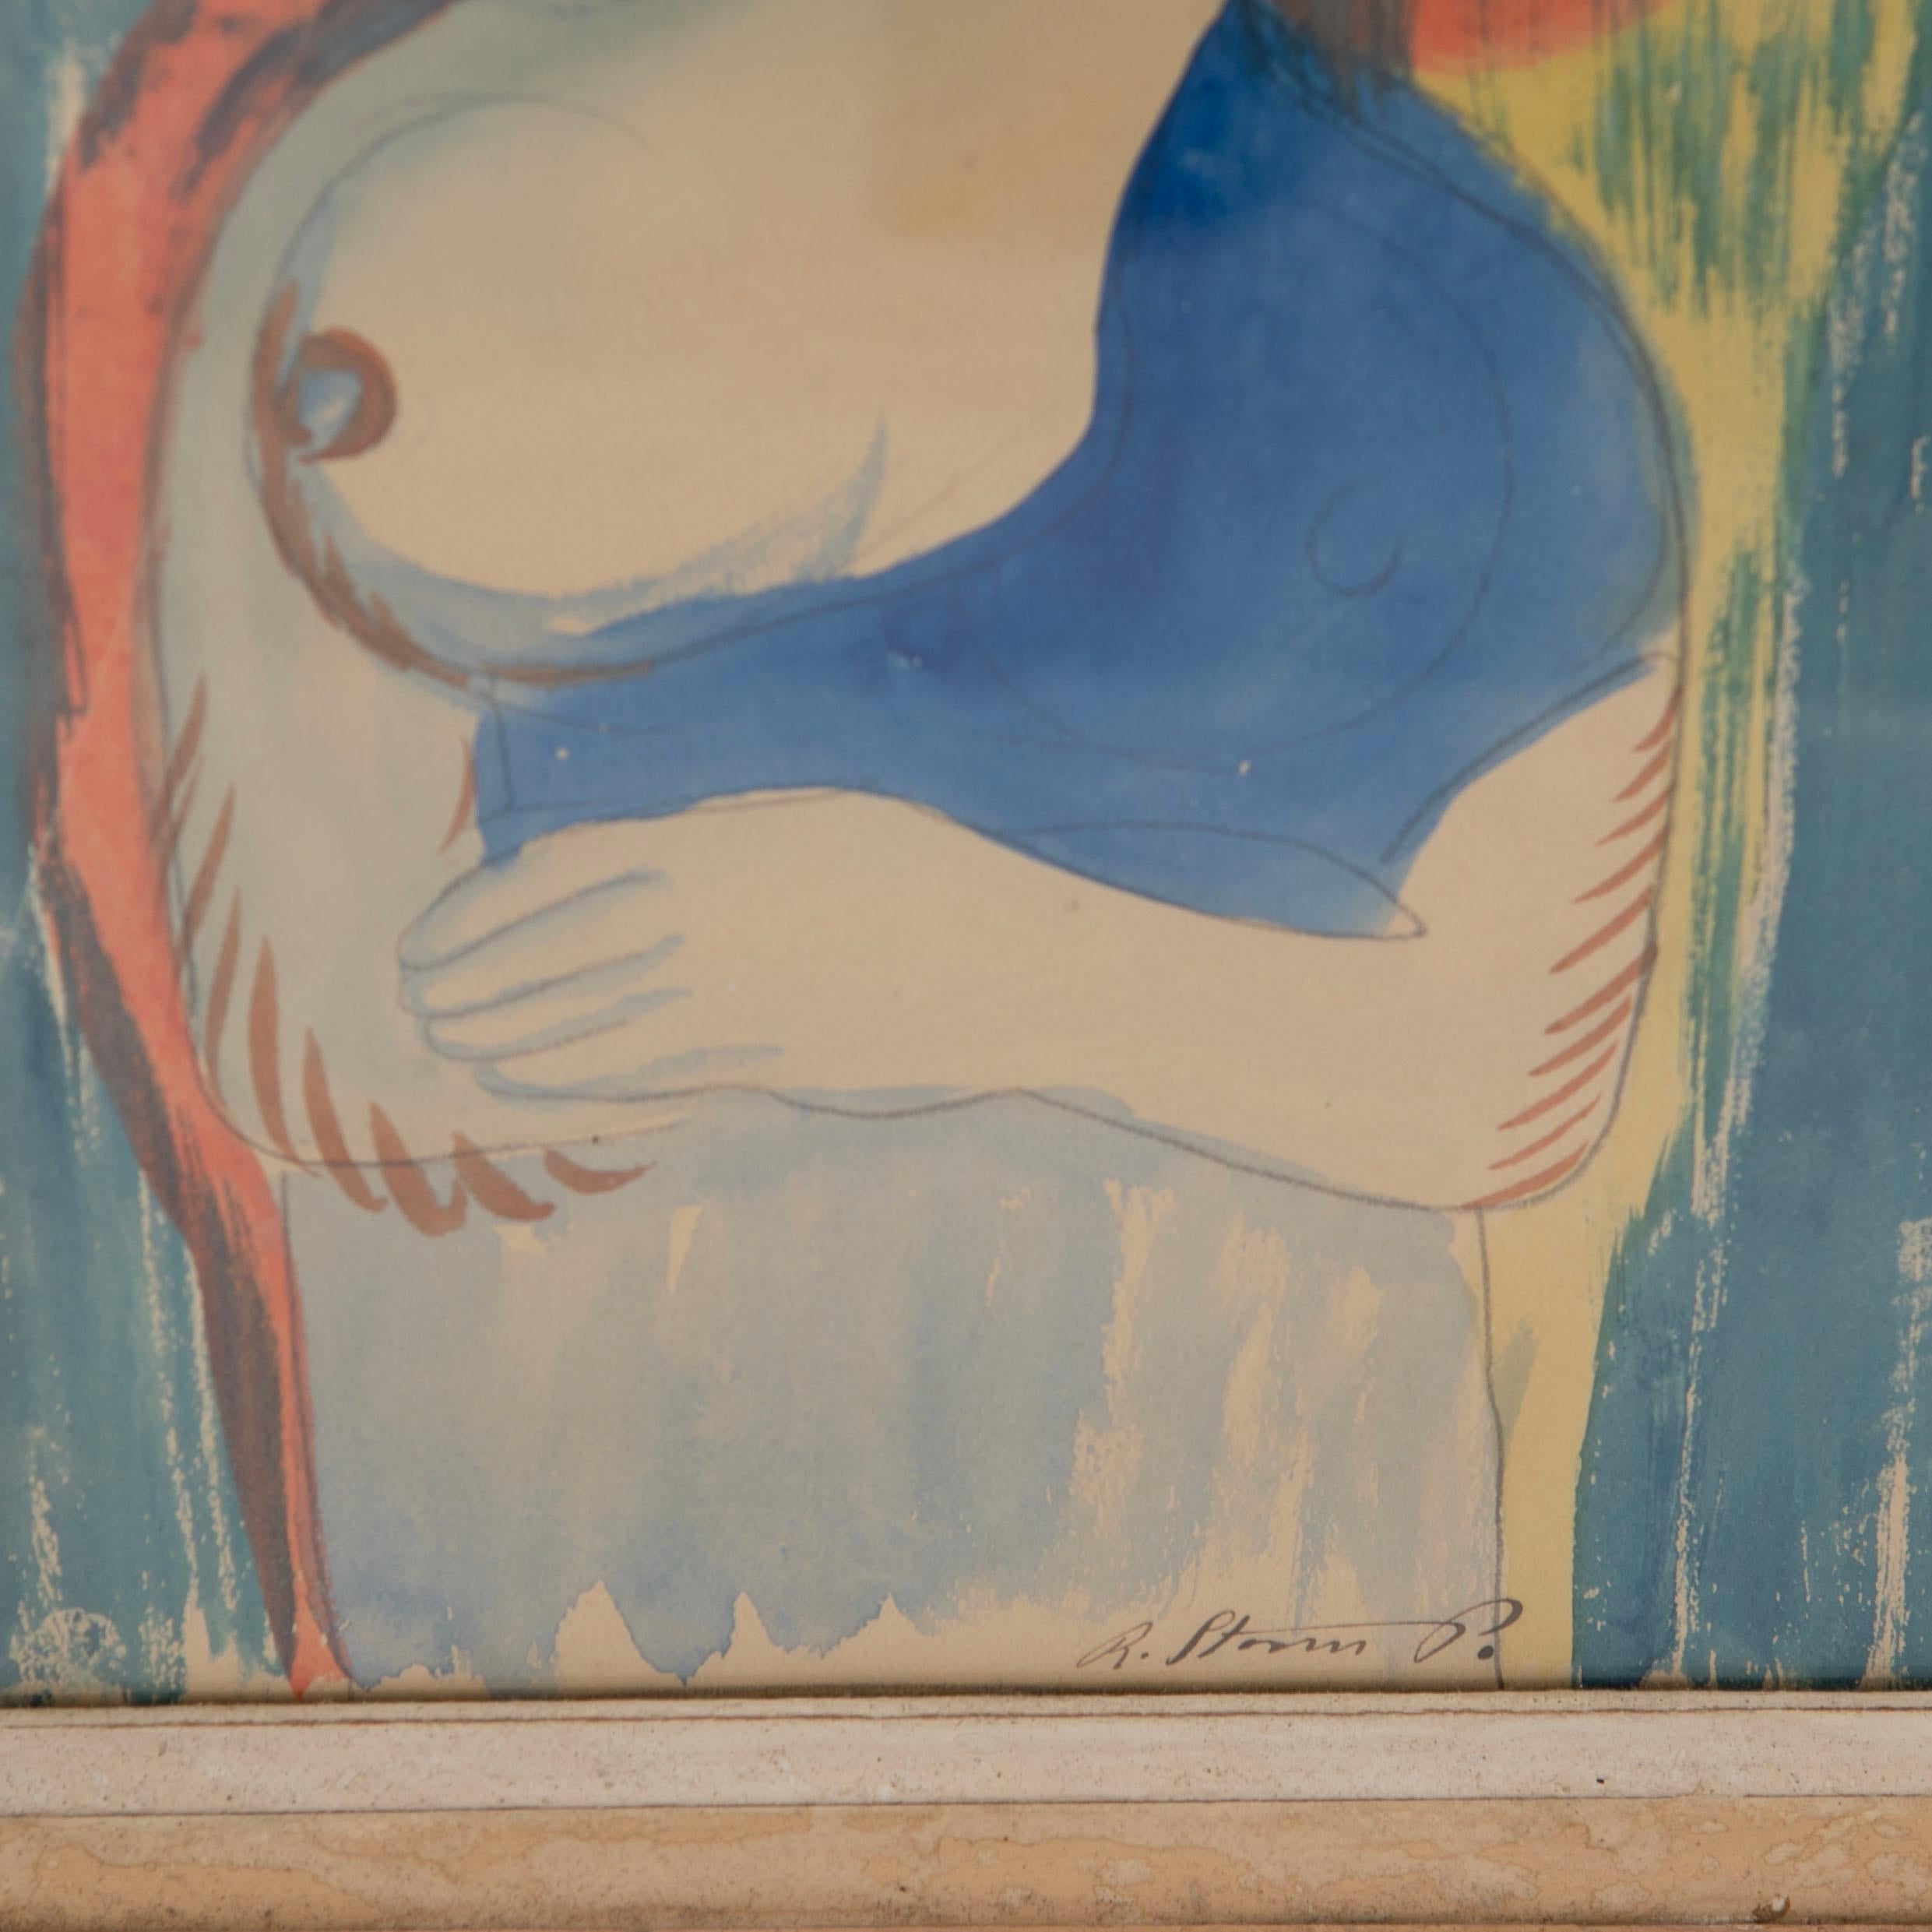 Gerahmtes Aquarellgemälde von Robert Storm Petersen. „Frau mit entblößter Brust“. (Dänisch)